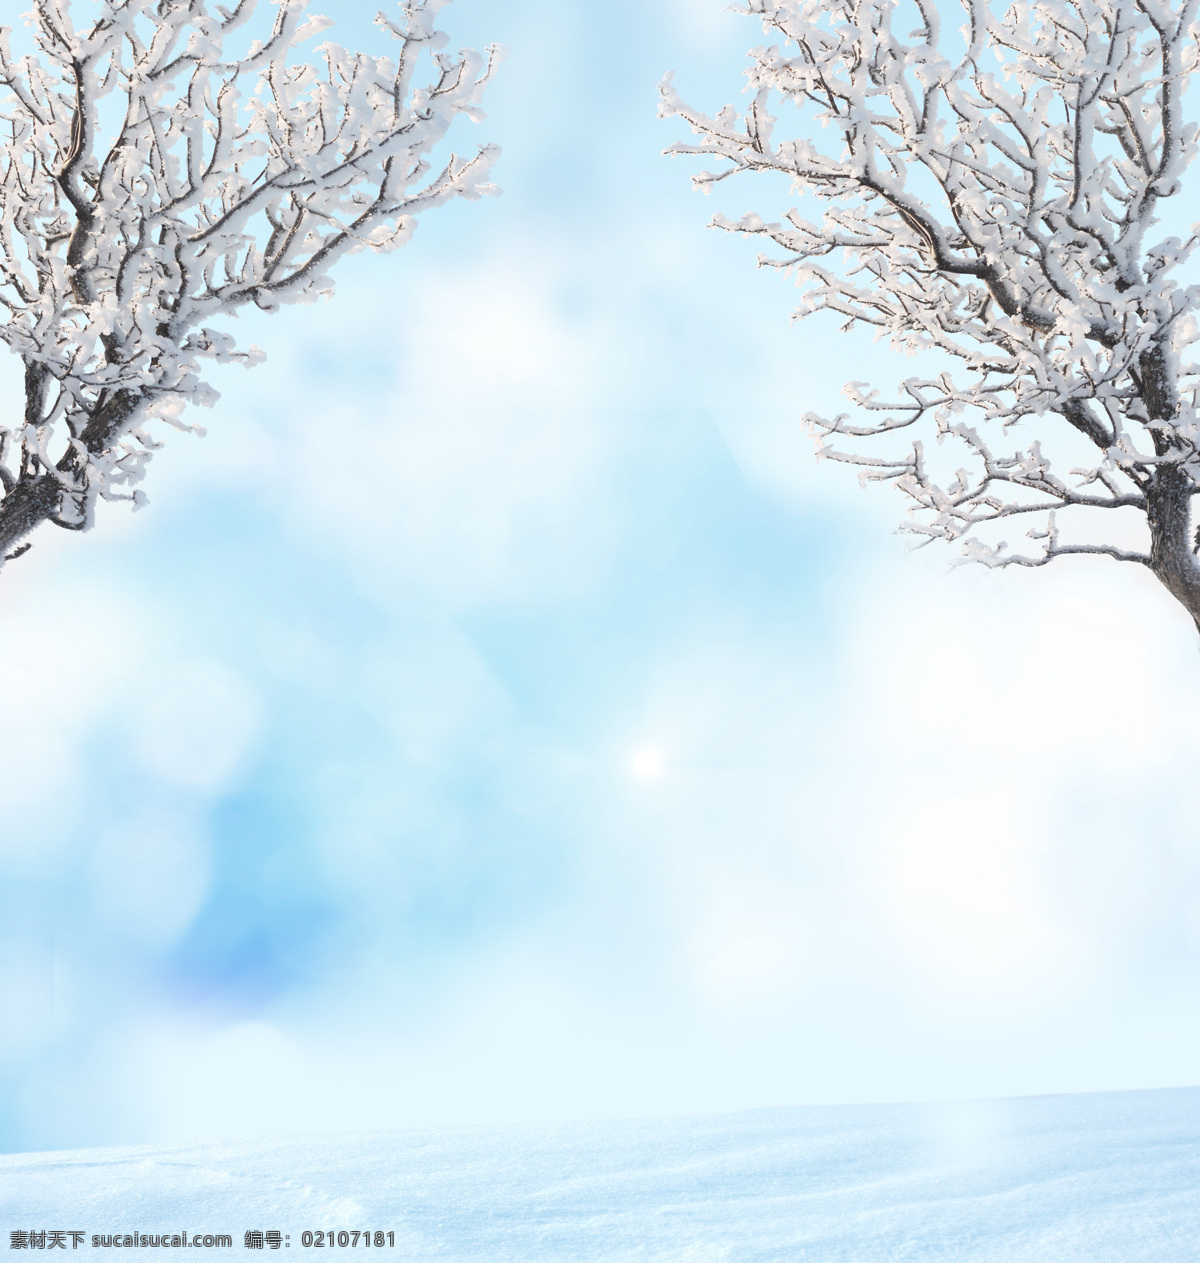 美丽 冬天 雪地 风景 美丽冬天风景 冬天雪景 雪地上的树 美丽风景 山水风景 风景图片